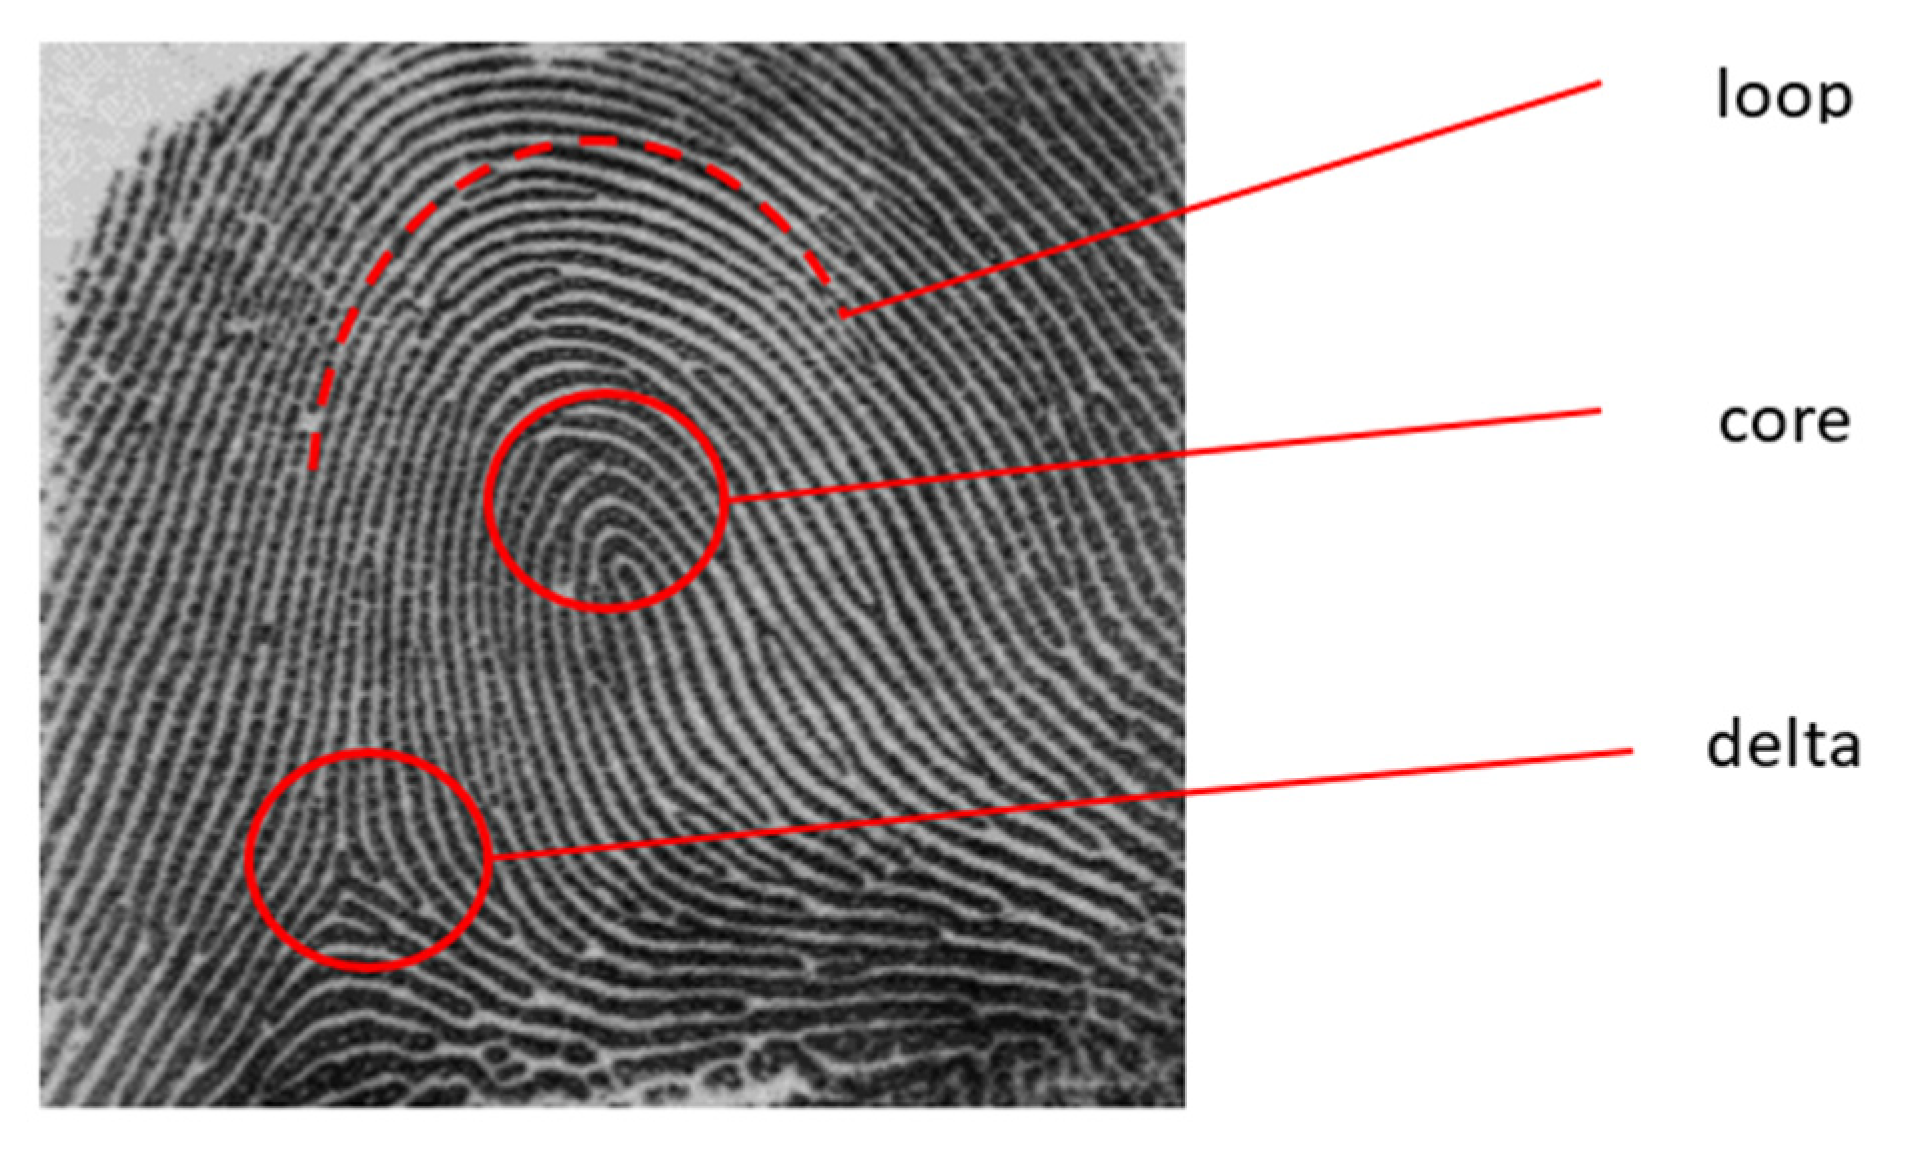 types of whorl fingerprints